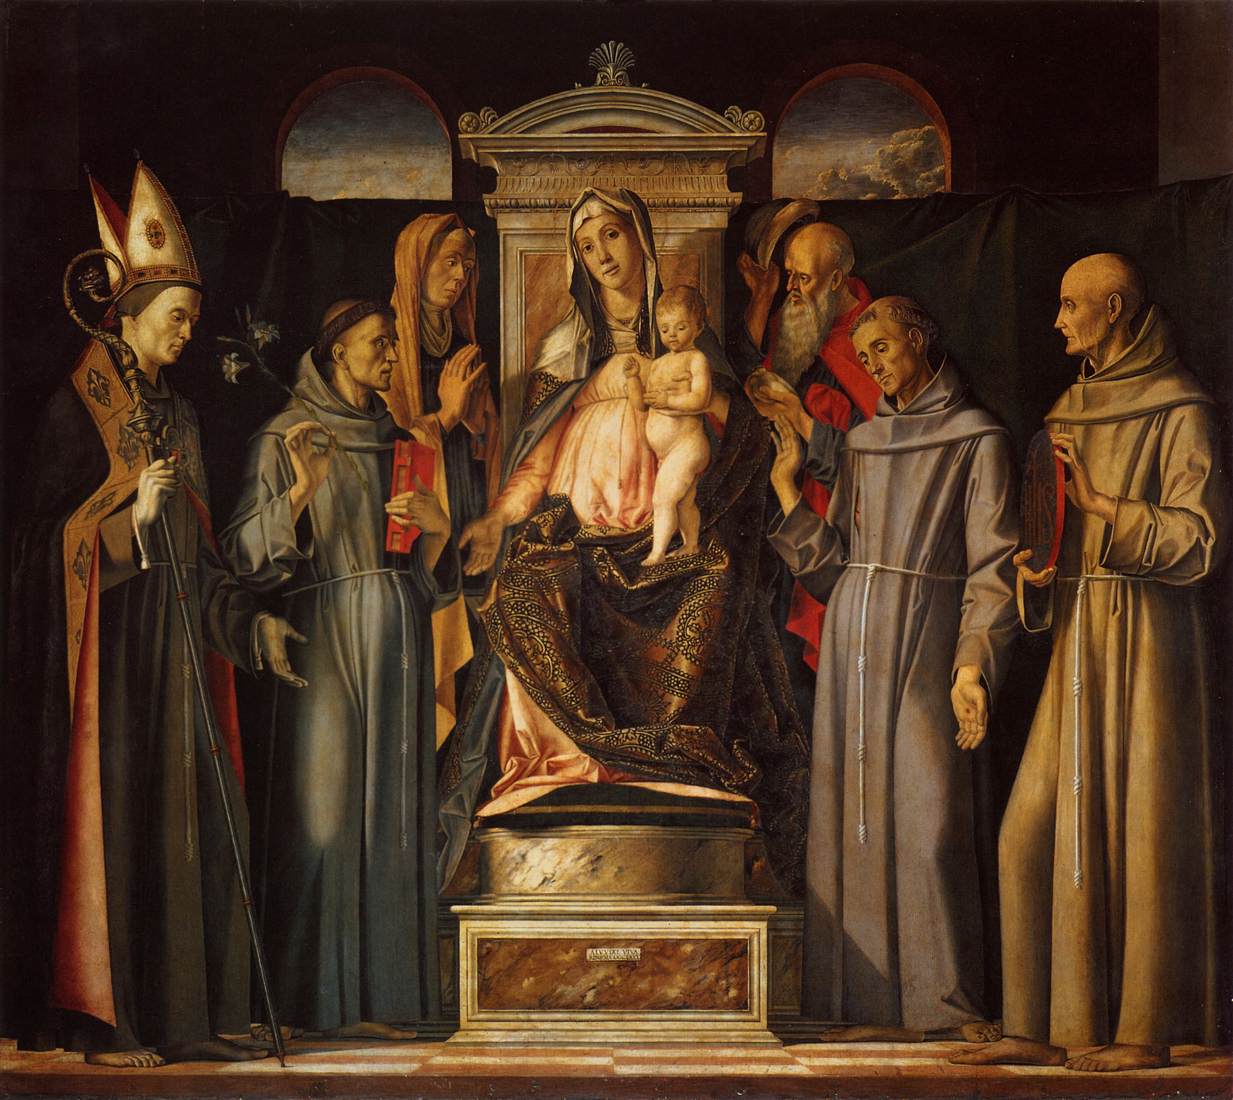 הבתולה והילד התנפצו עם הקדושים (סארה צ'לייזיונה)